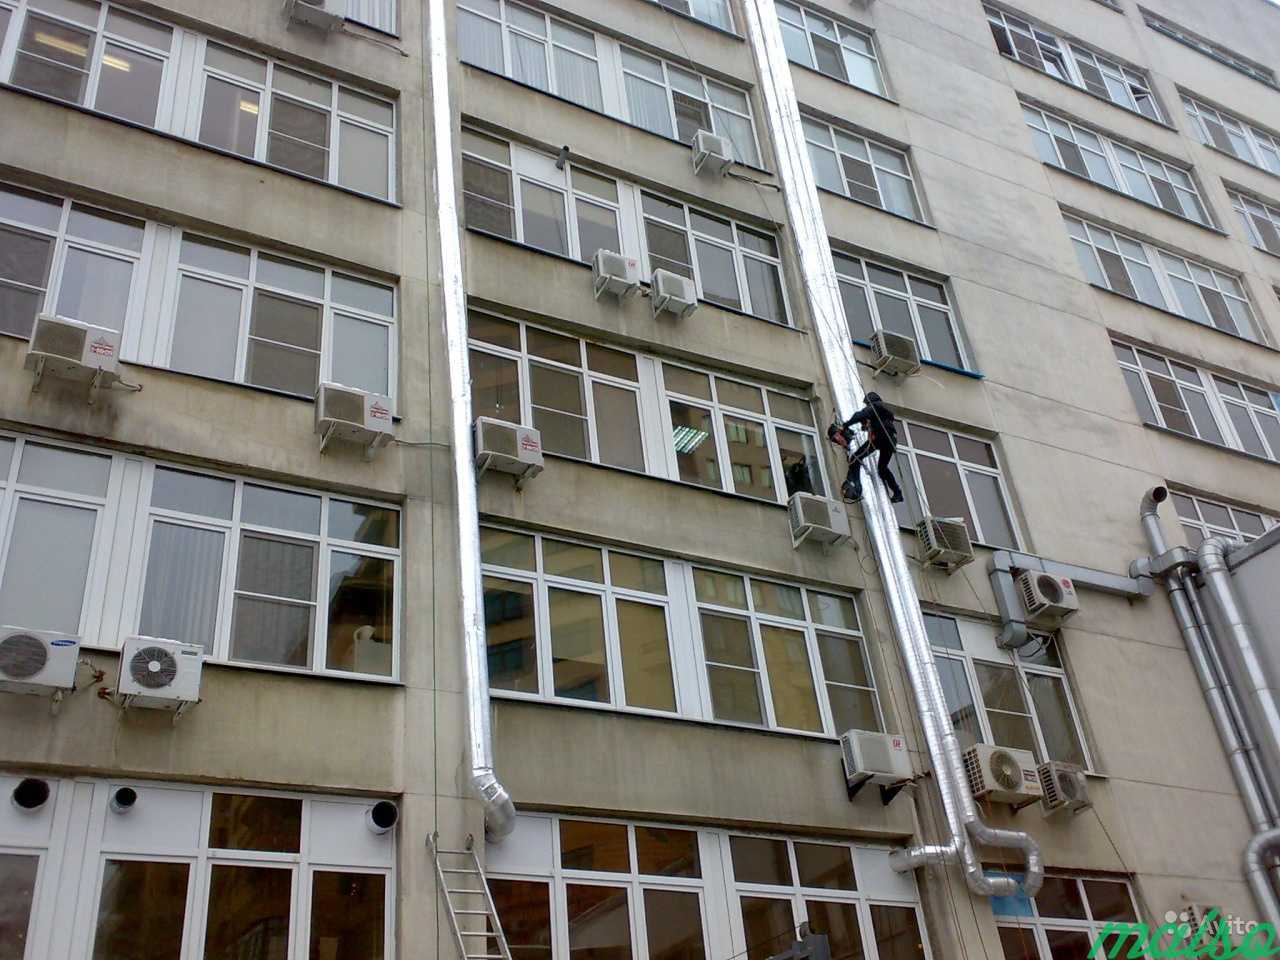 Монтаж вентиляционных систем в Санкт-Петербурге. Фото 4